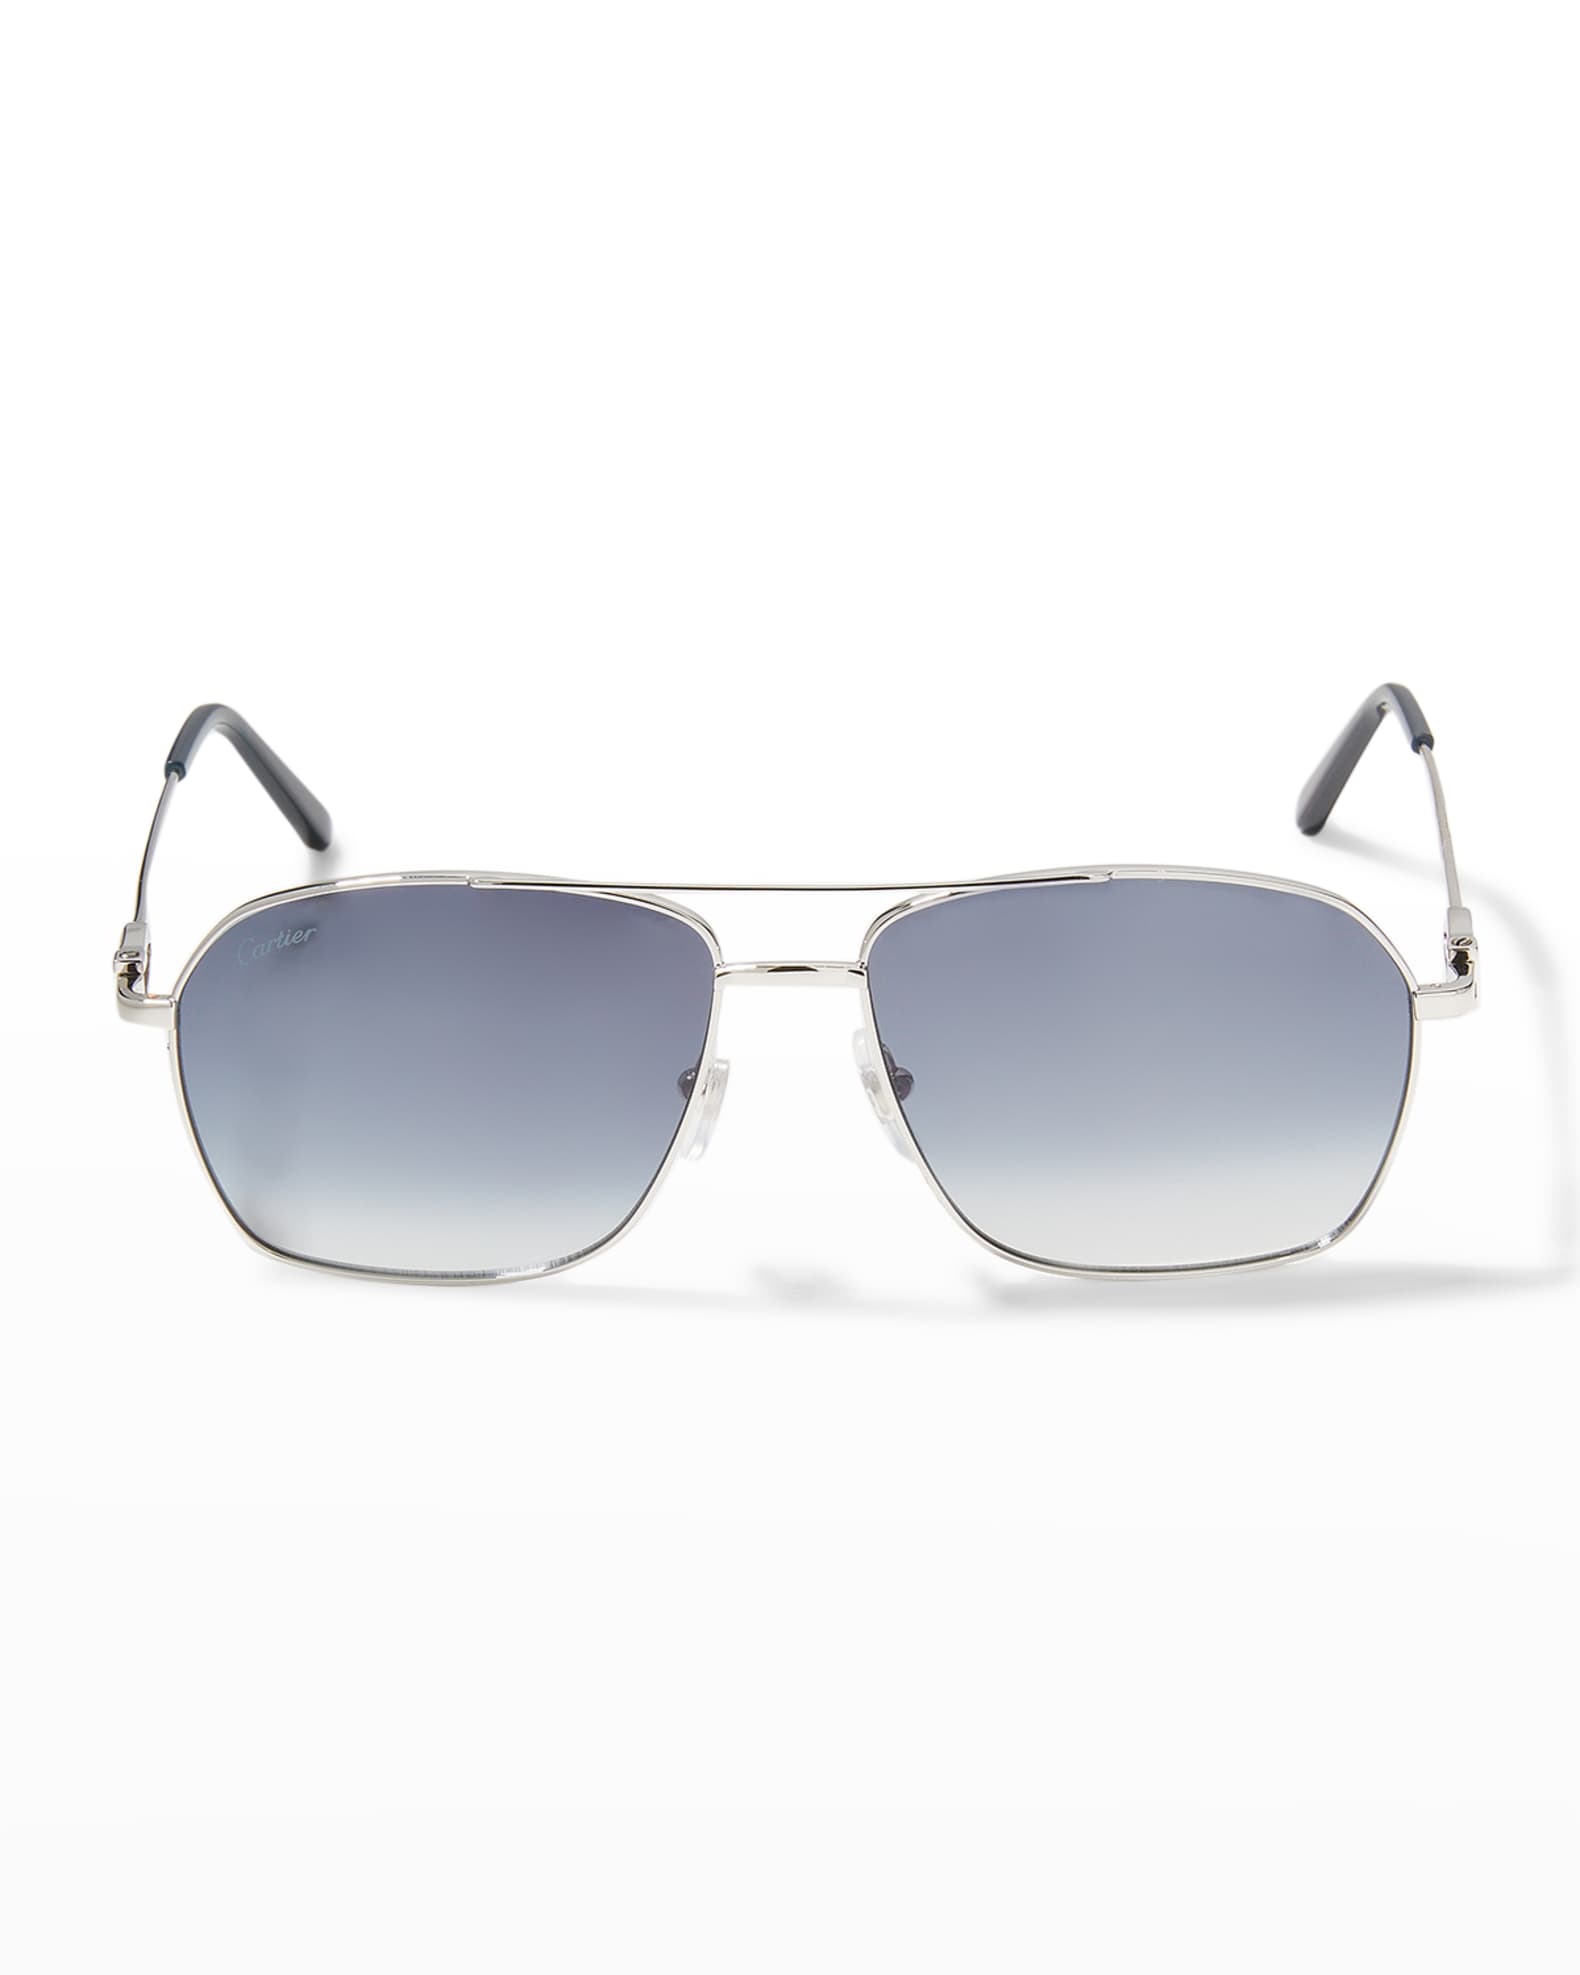 Cartier Men's Gradient Navigator Sunglasses | Neiman Marcus